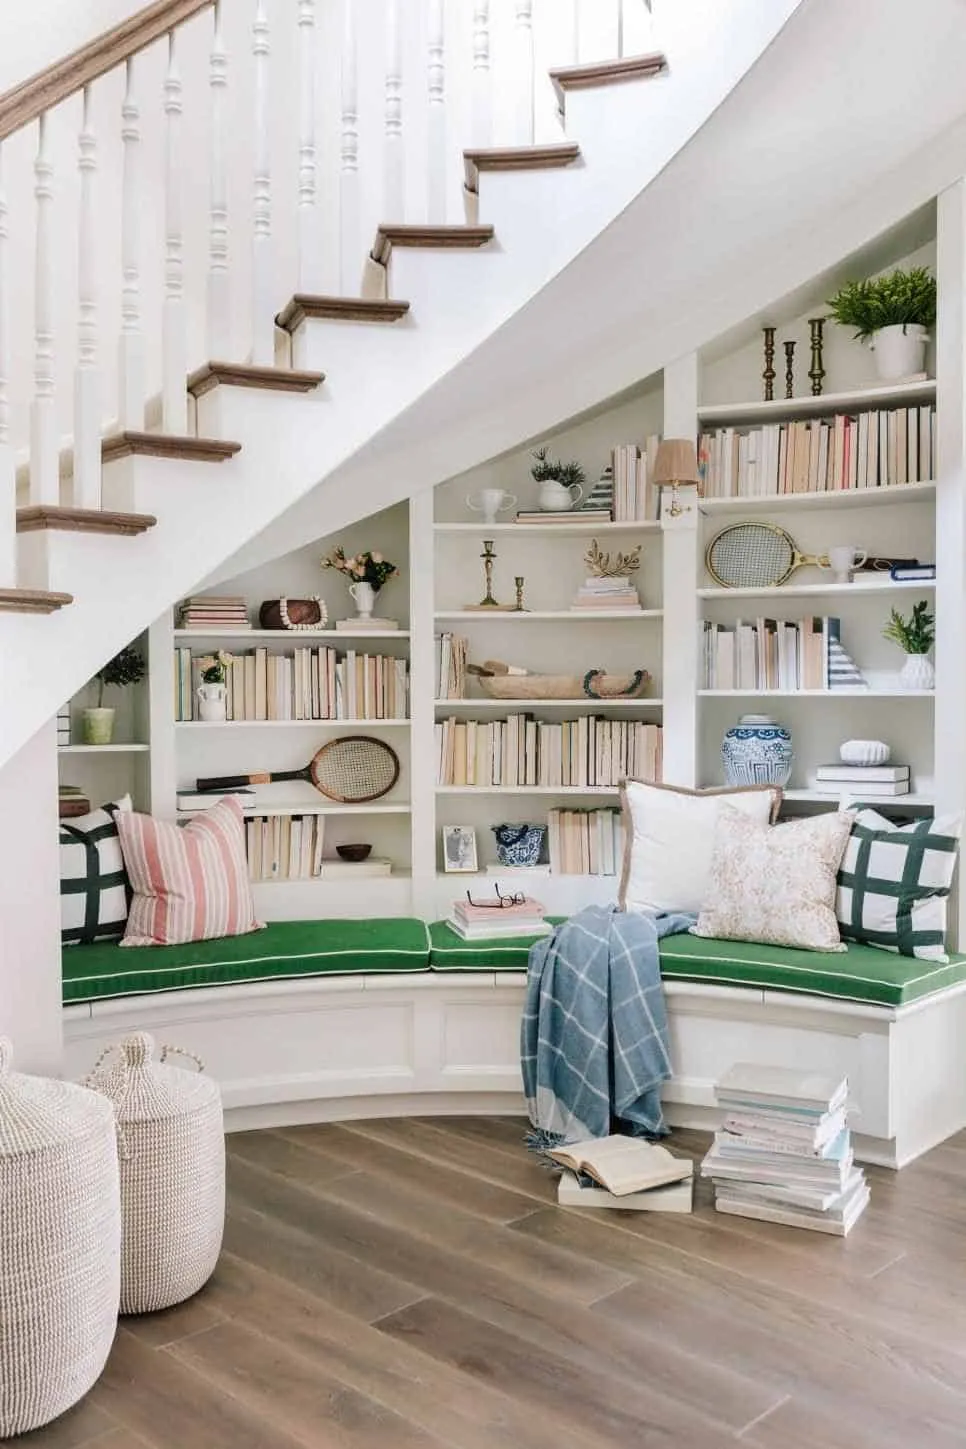 white bookshelf under stairs with books